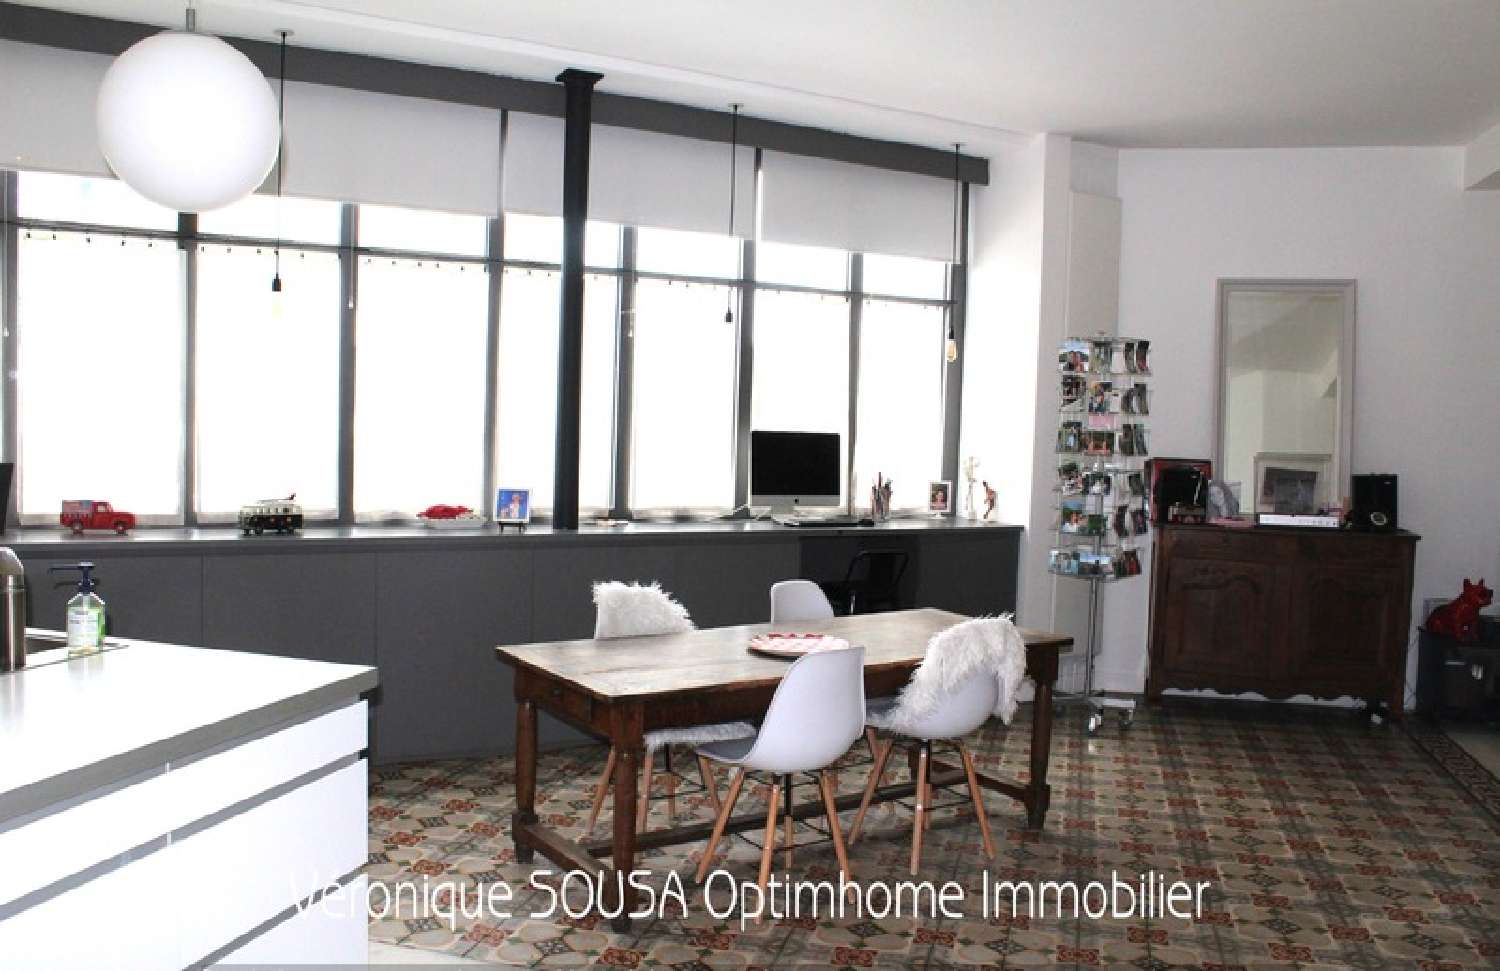  à vendre appartement Saint-Germain-en-Laye Yvelines 5